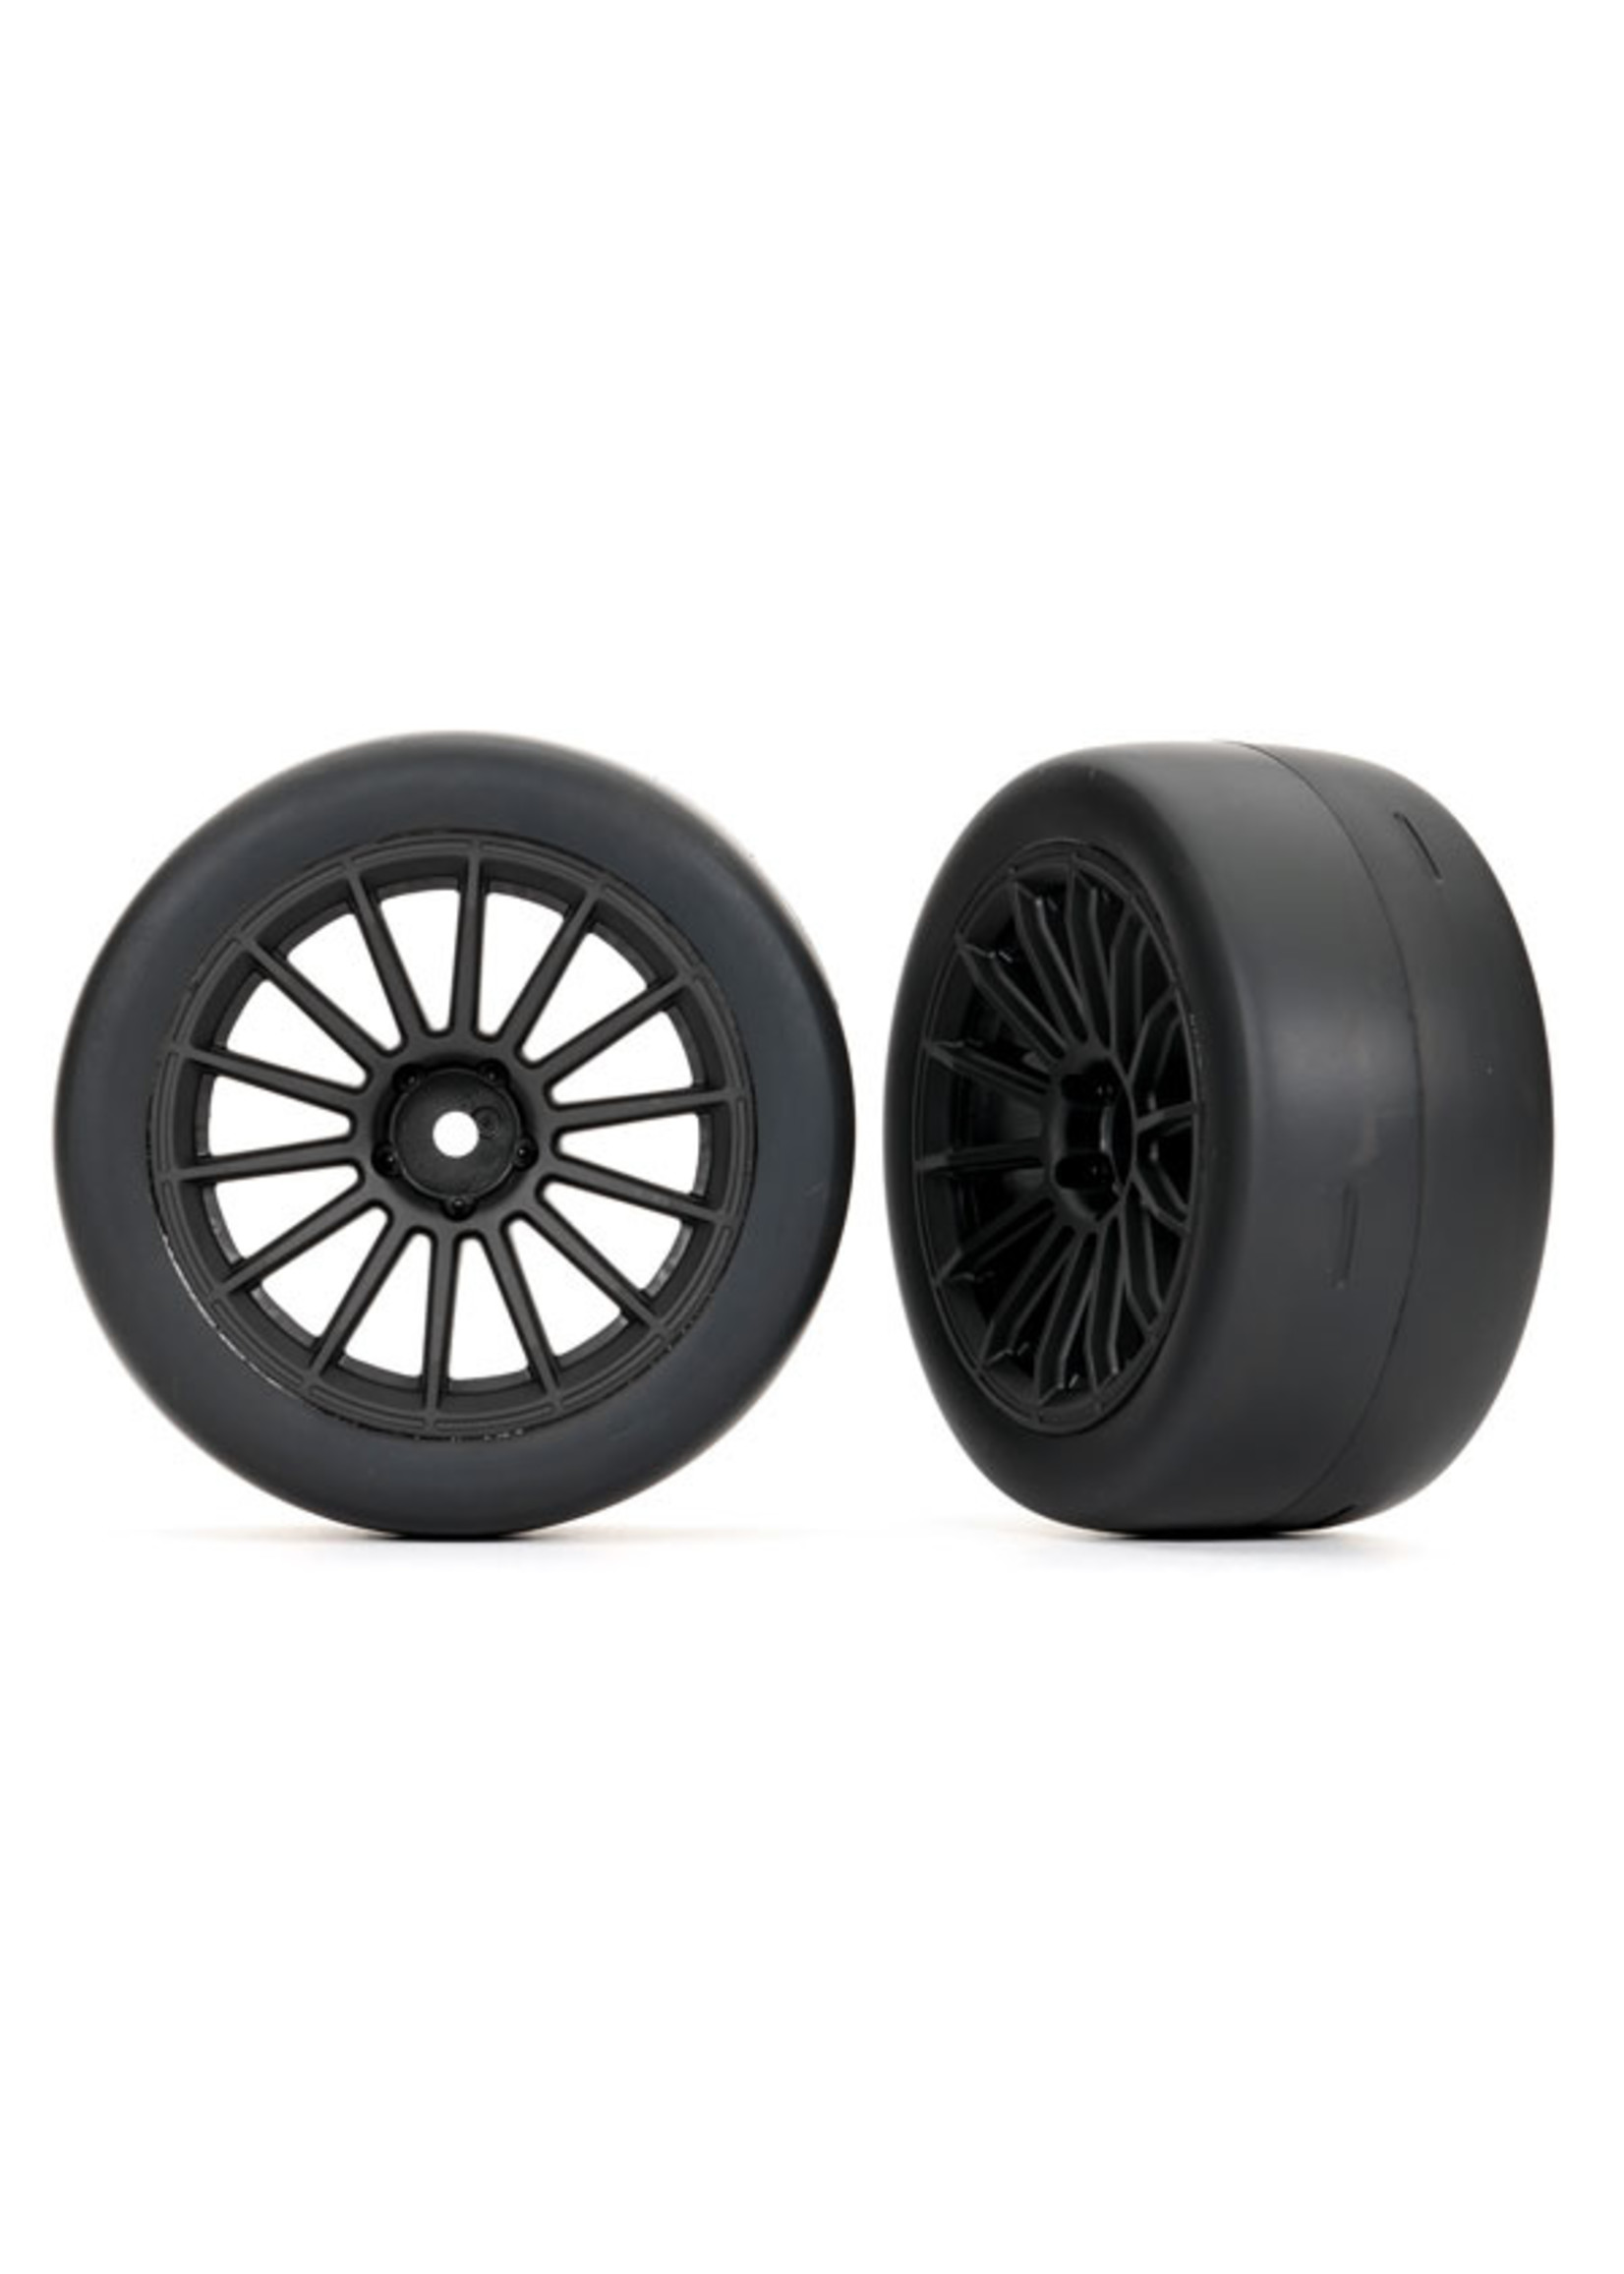 Traxxas 9374 - Multi-spoke Black Wheels / 2.0" Ultra-wide Tires